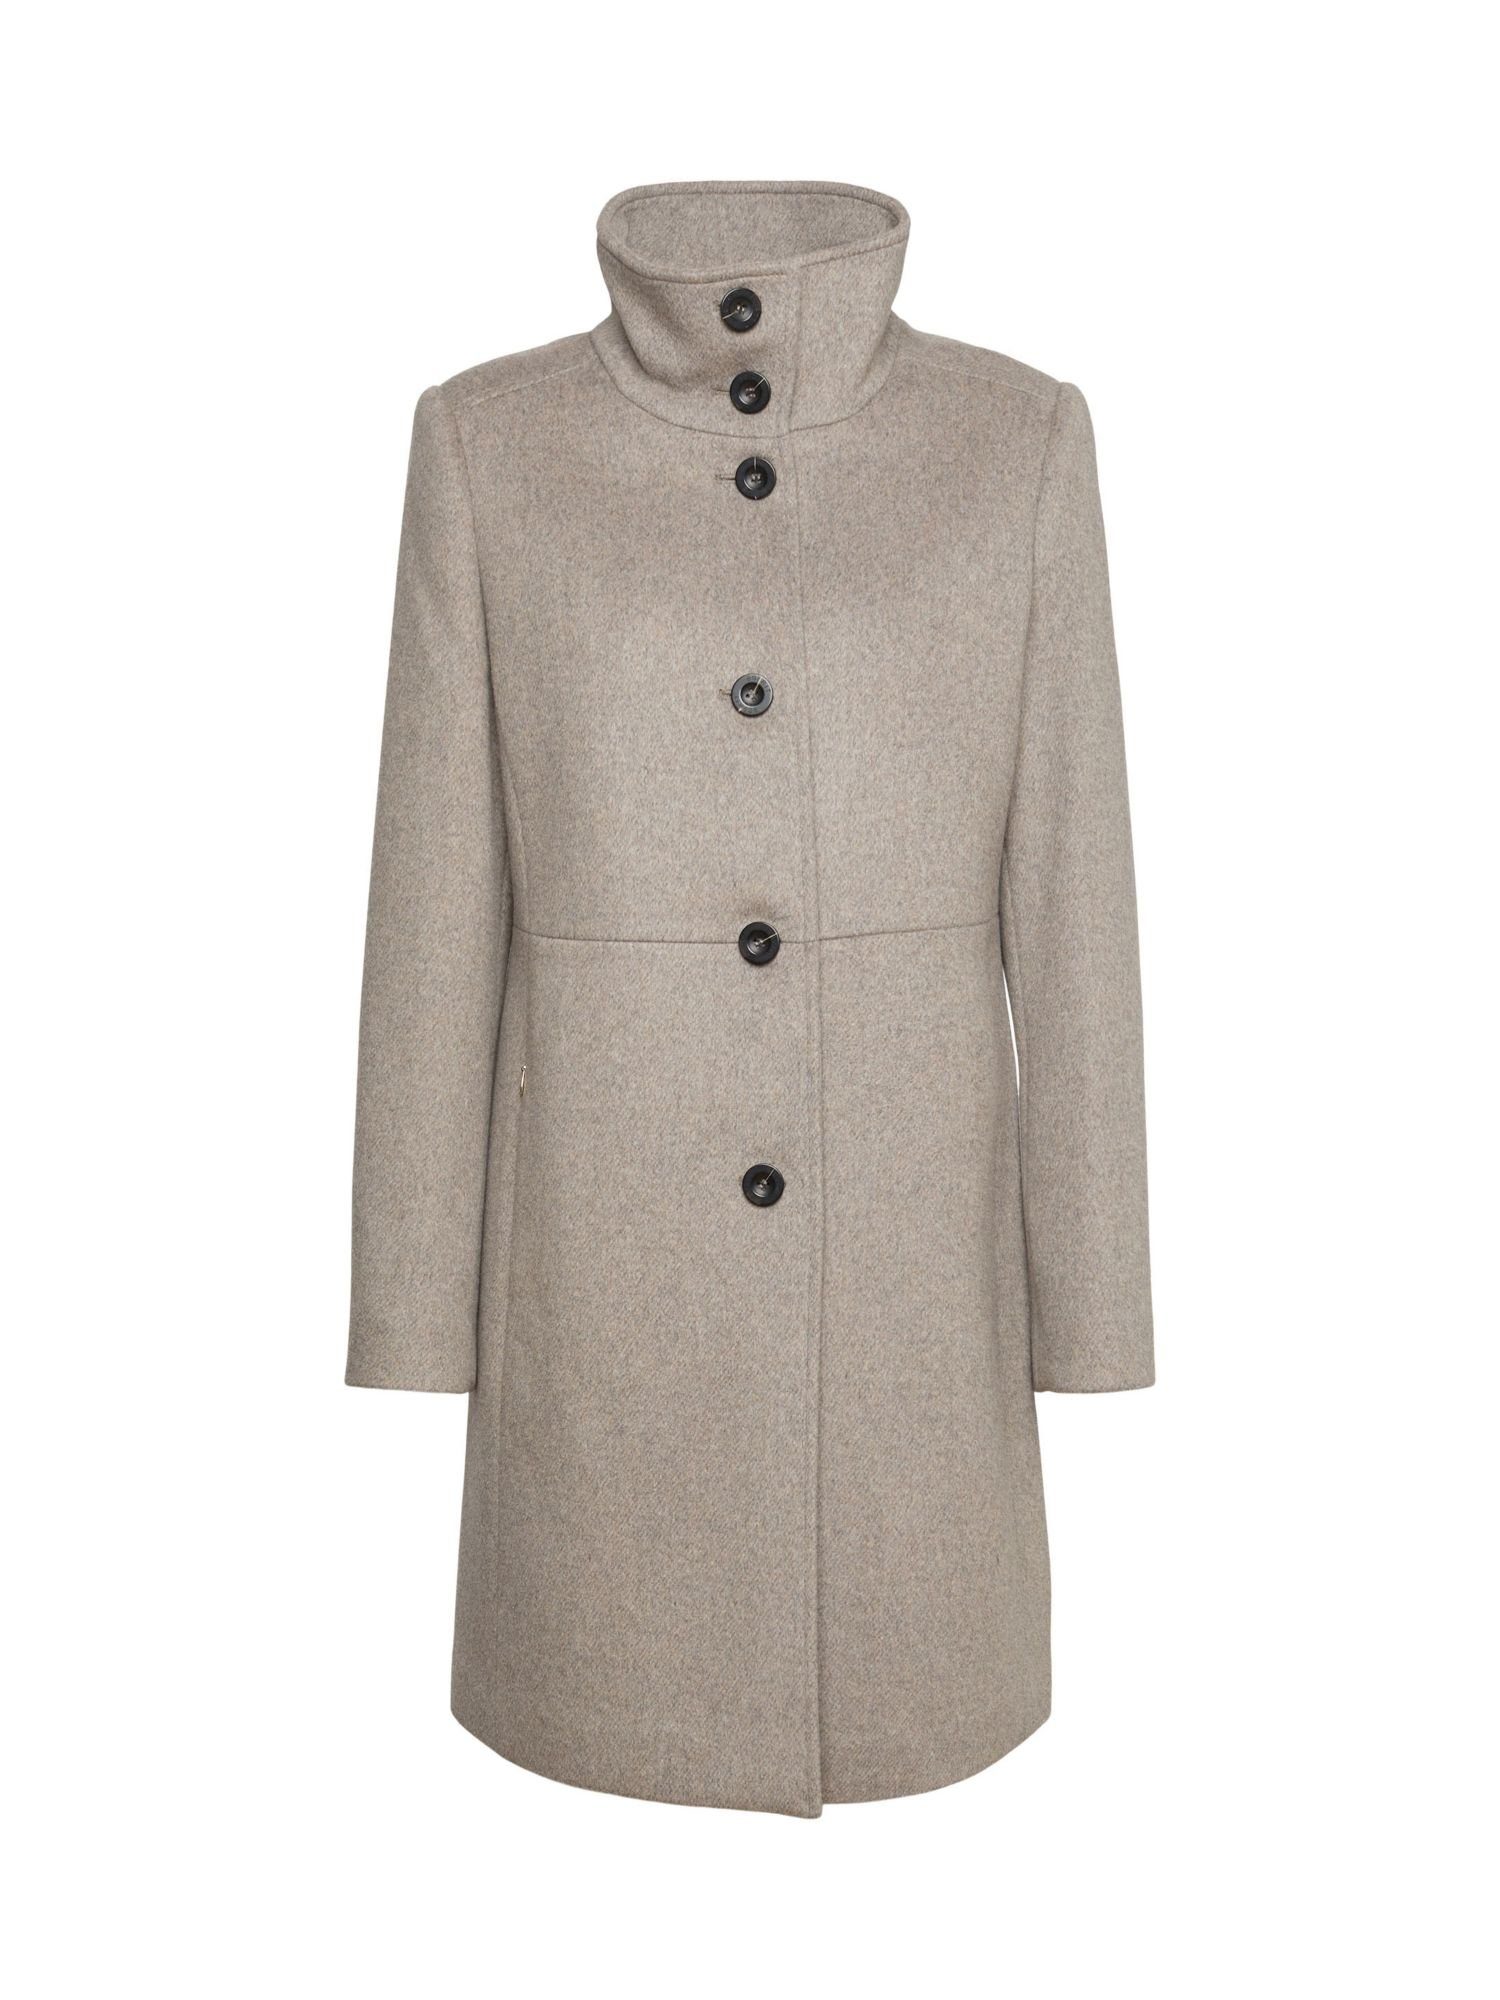 Esprit Collection Wollmantel Mantel aus weich angerauter Wolle | 